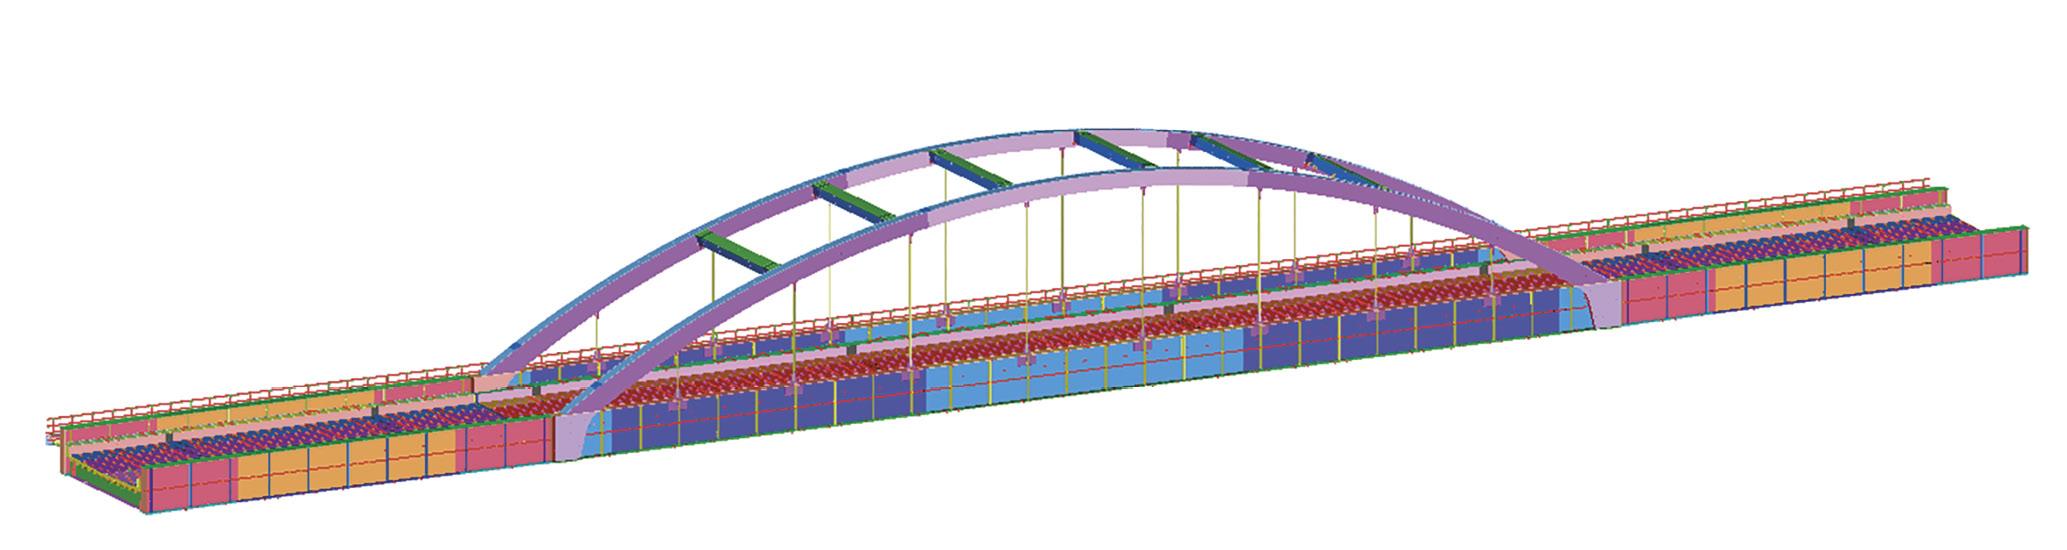 3D model pro výrobní dokumentaci (software Advance steel).